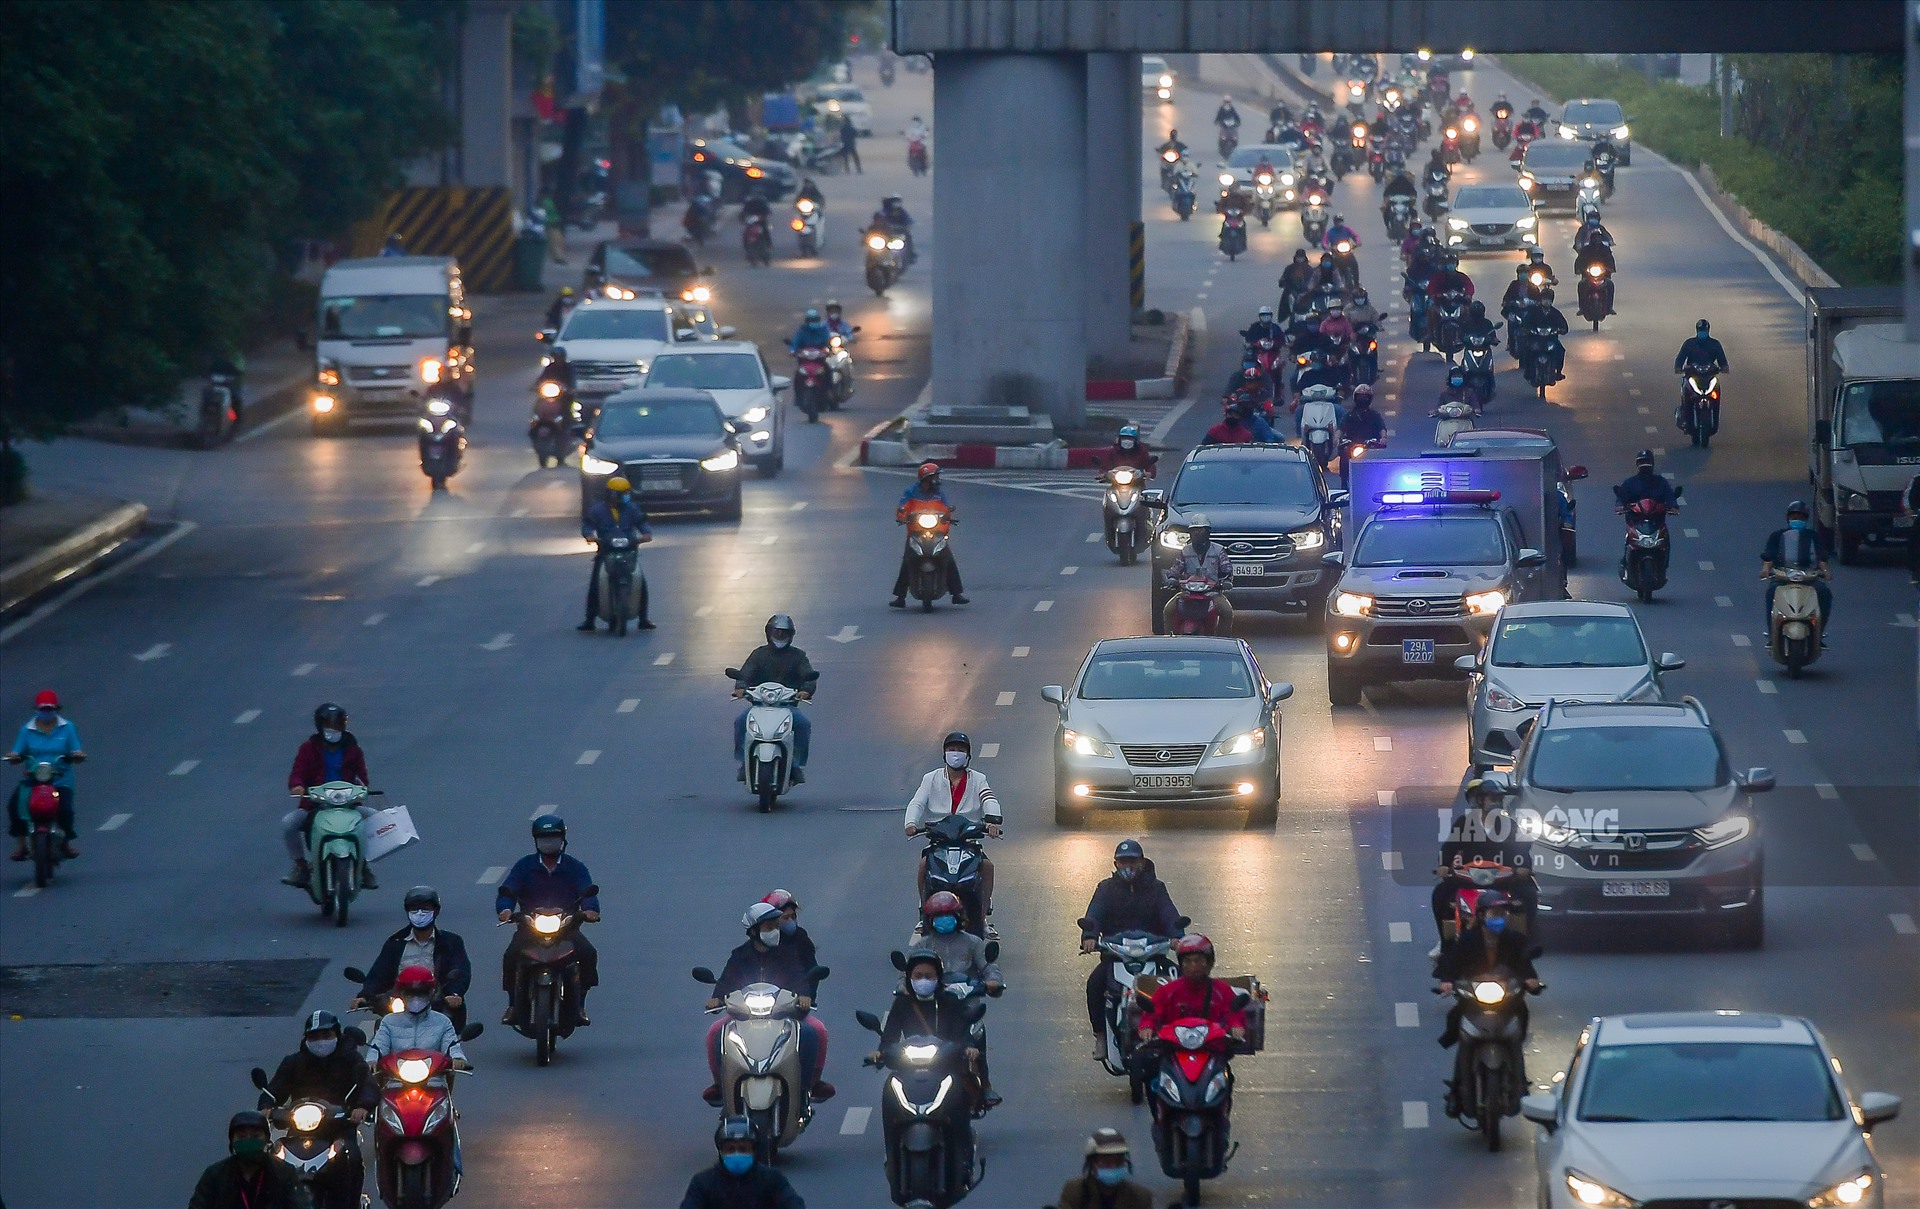 Ghi nhận của phóng viên Báo Lao Động tại tuyến đường Nguyễn Trãi thời điểm 18h, người dân đi lại trên đường đông đúc hơn hẳn so với những ngày đầu thực hiện việc cách ly xã hội.